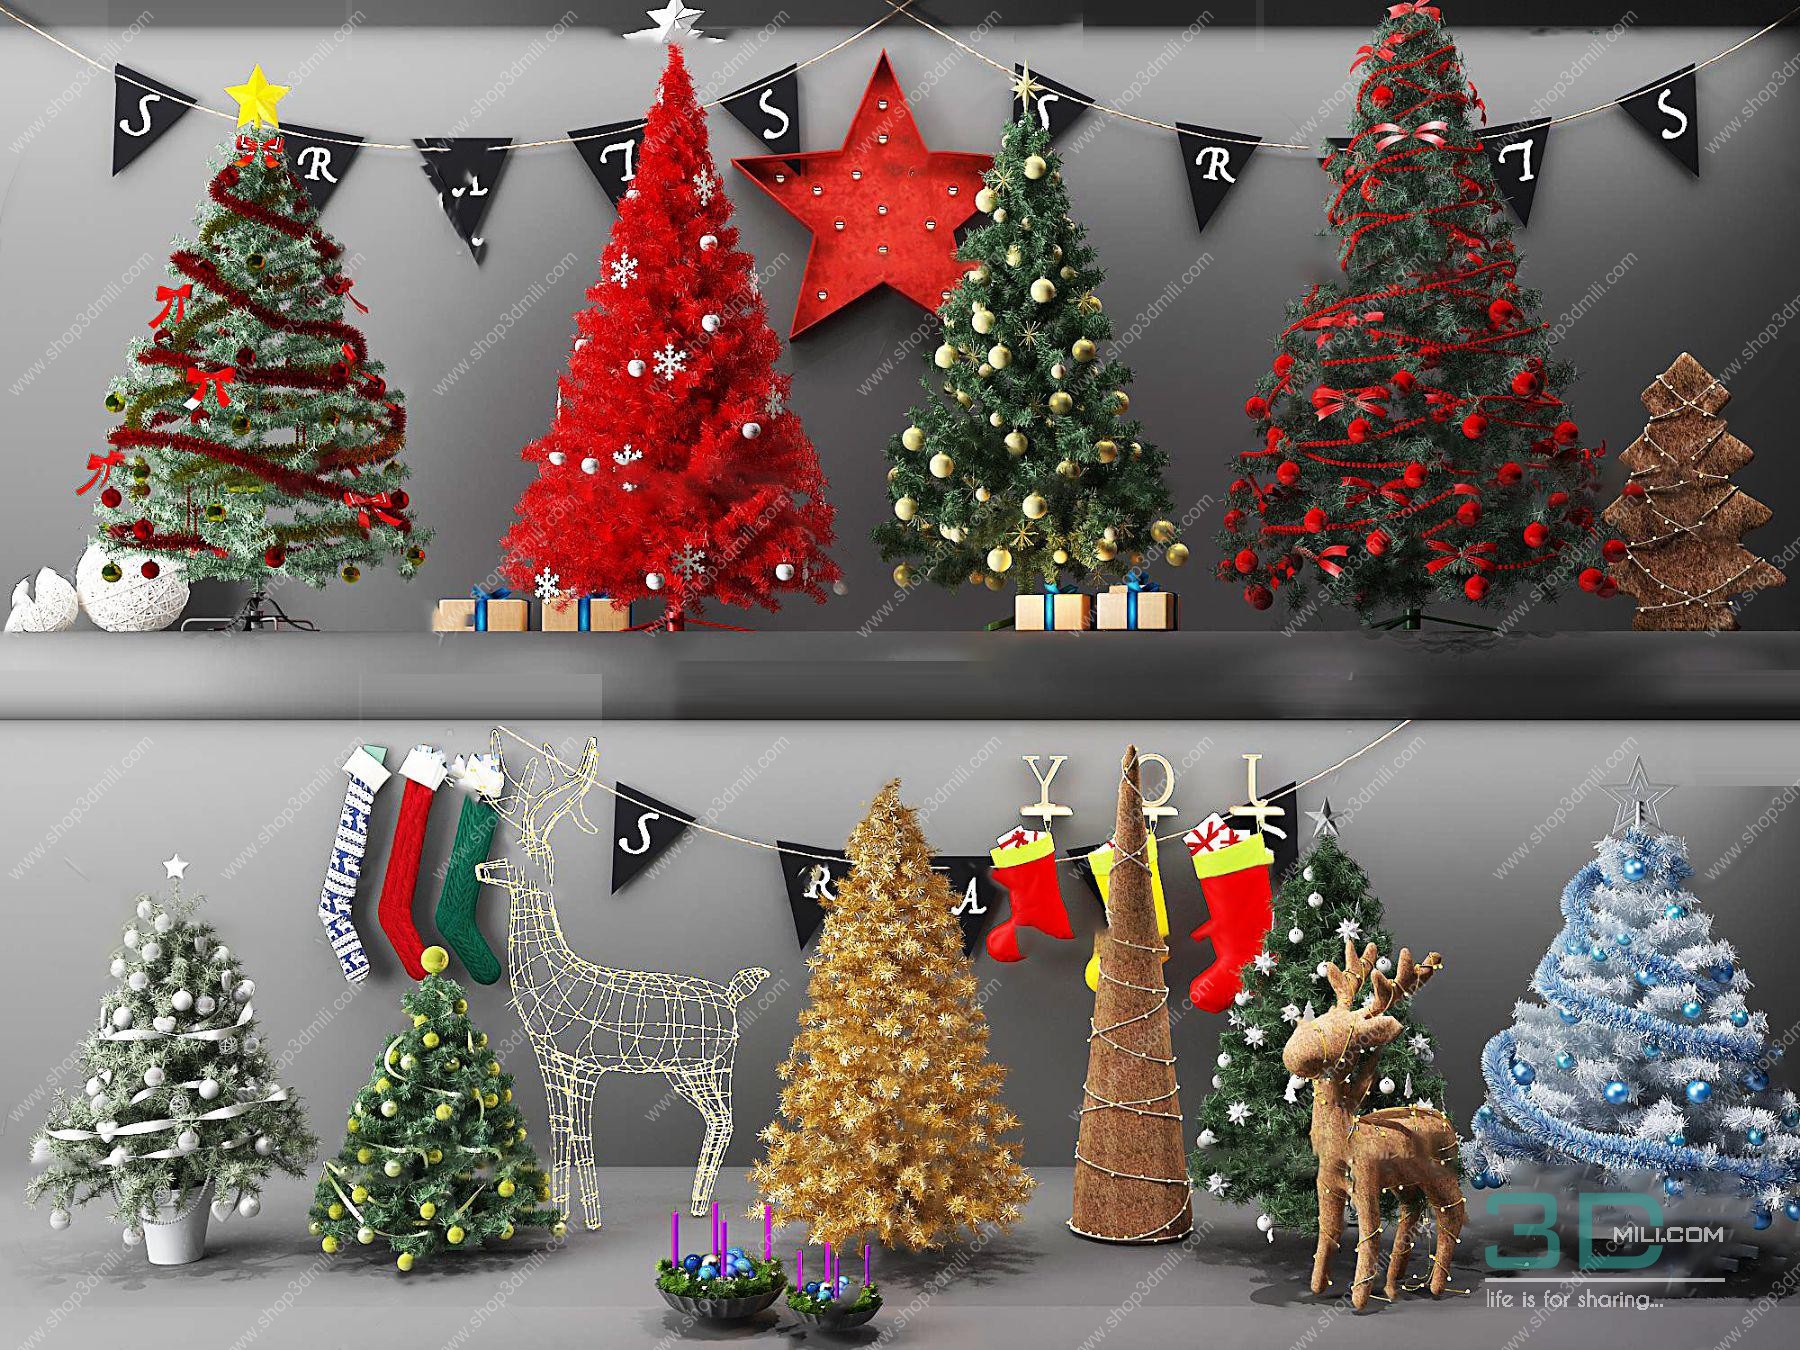 Tải miễn phí christmas decoration 3d model free download đẹp nhất cho ...